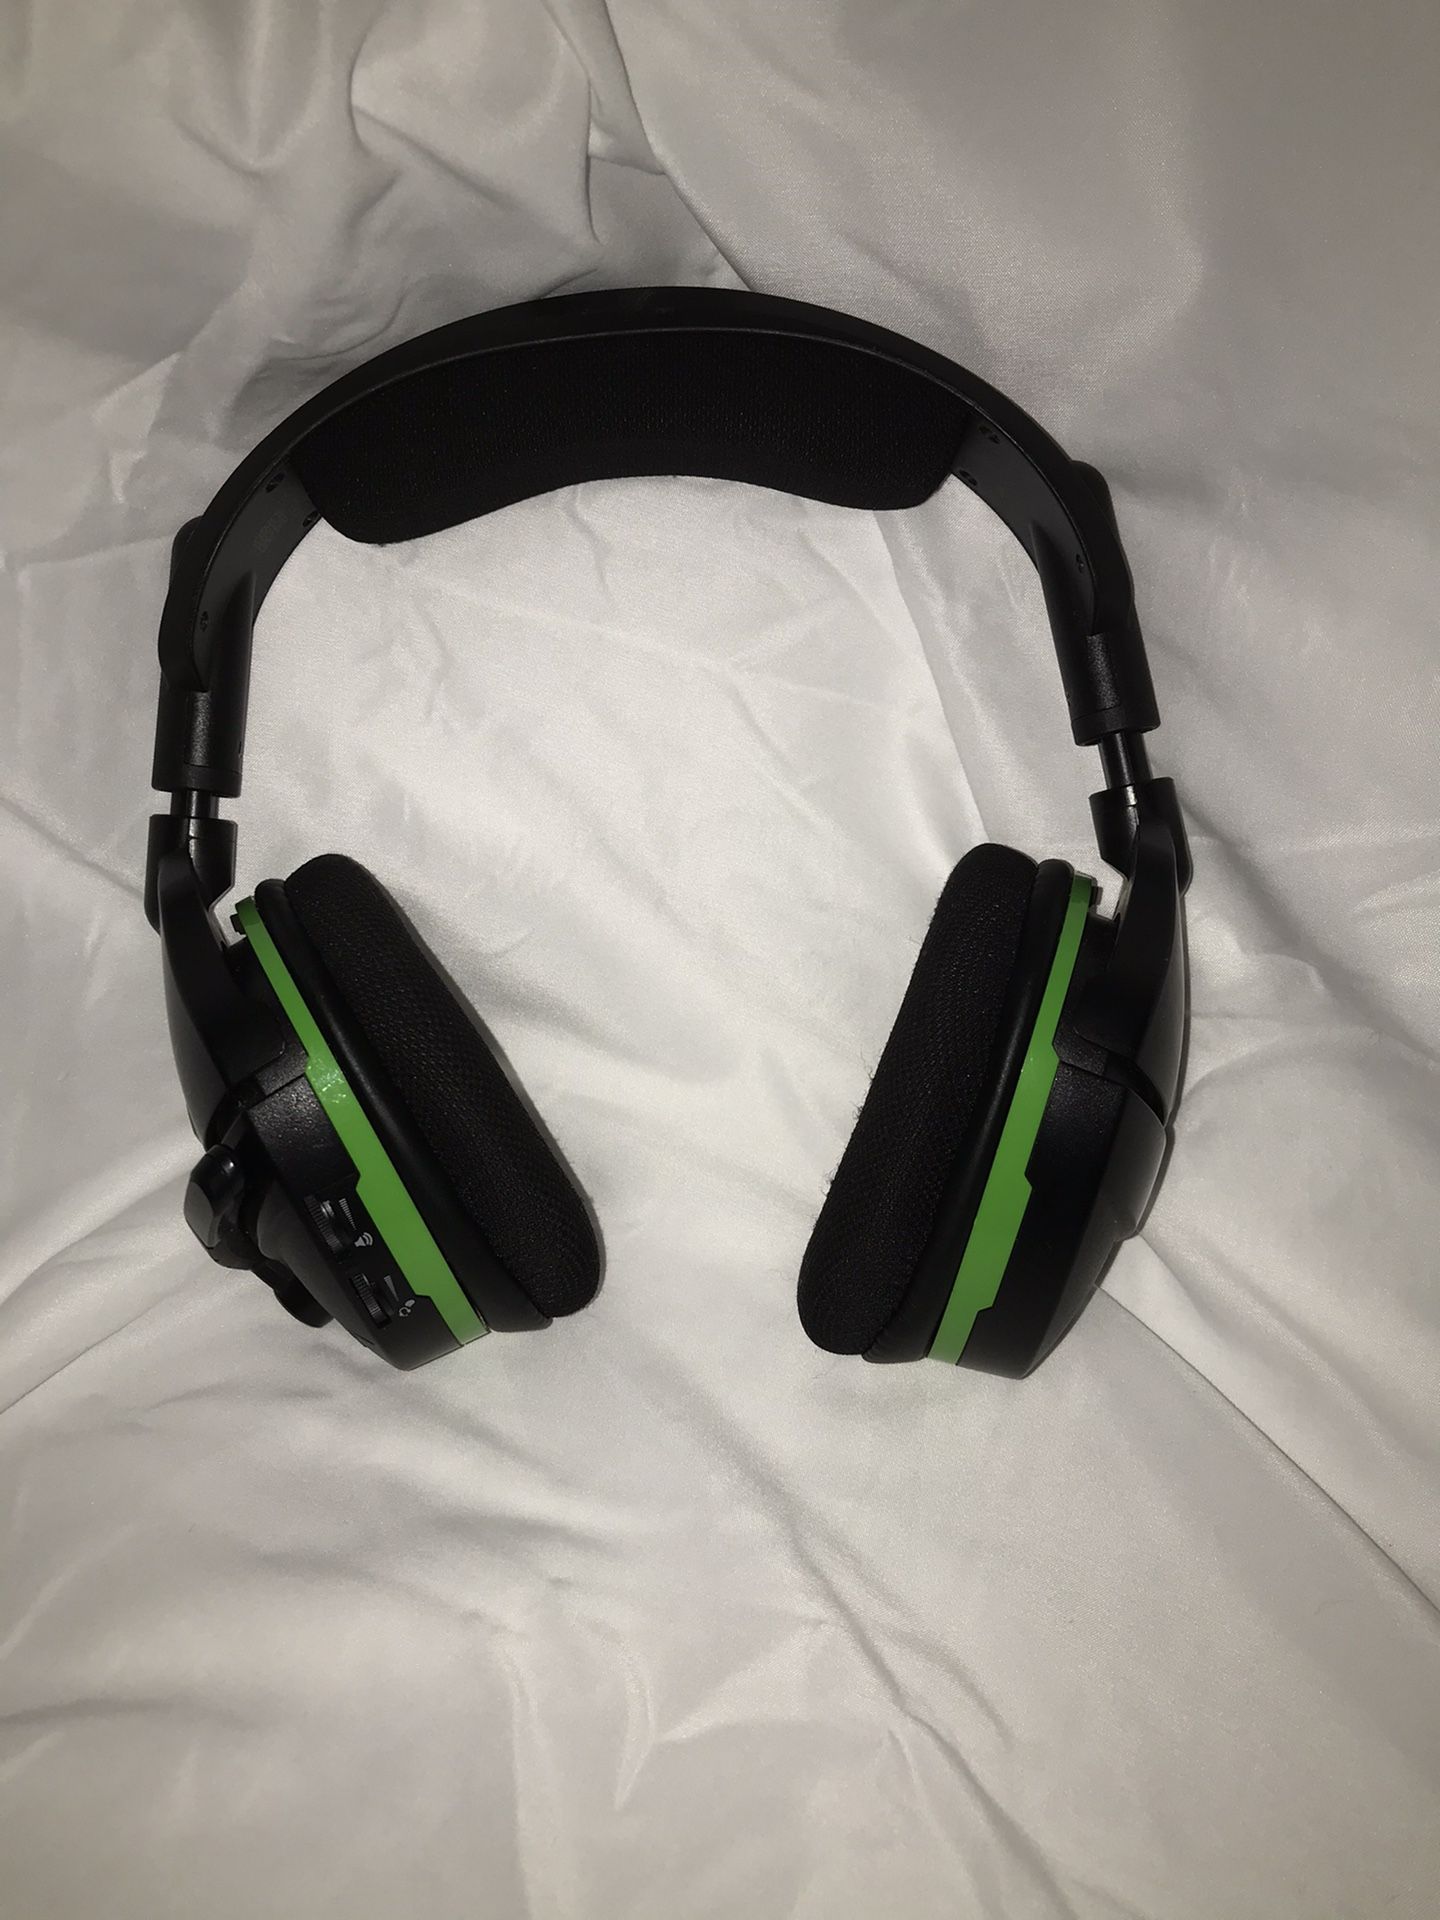 Turtle beach Xbox headphones